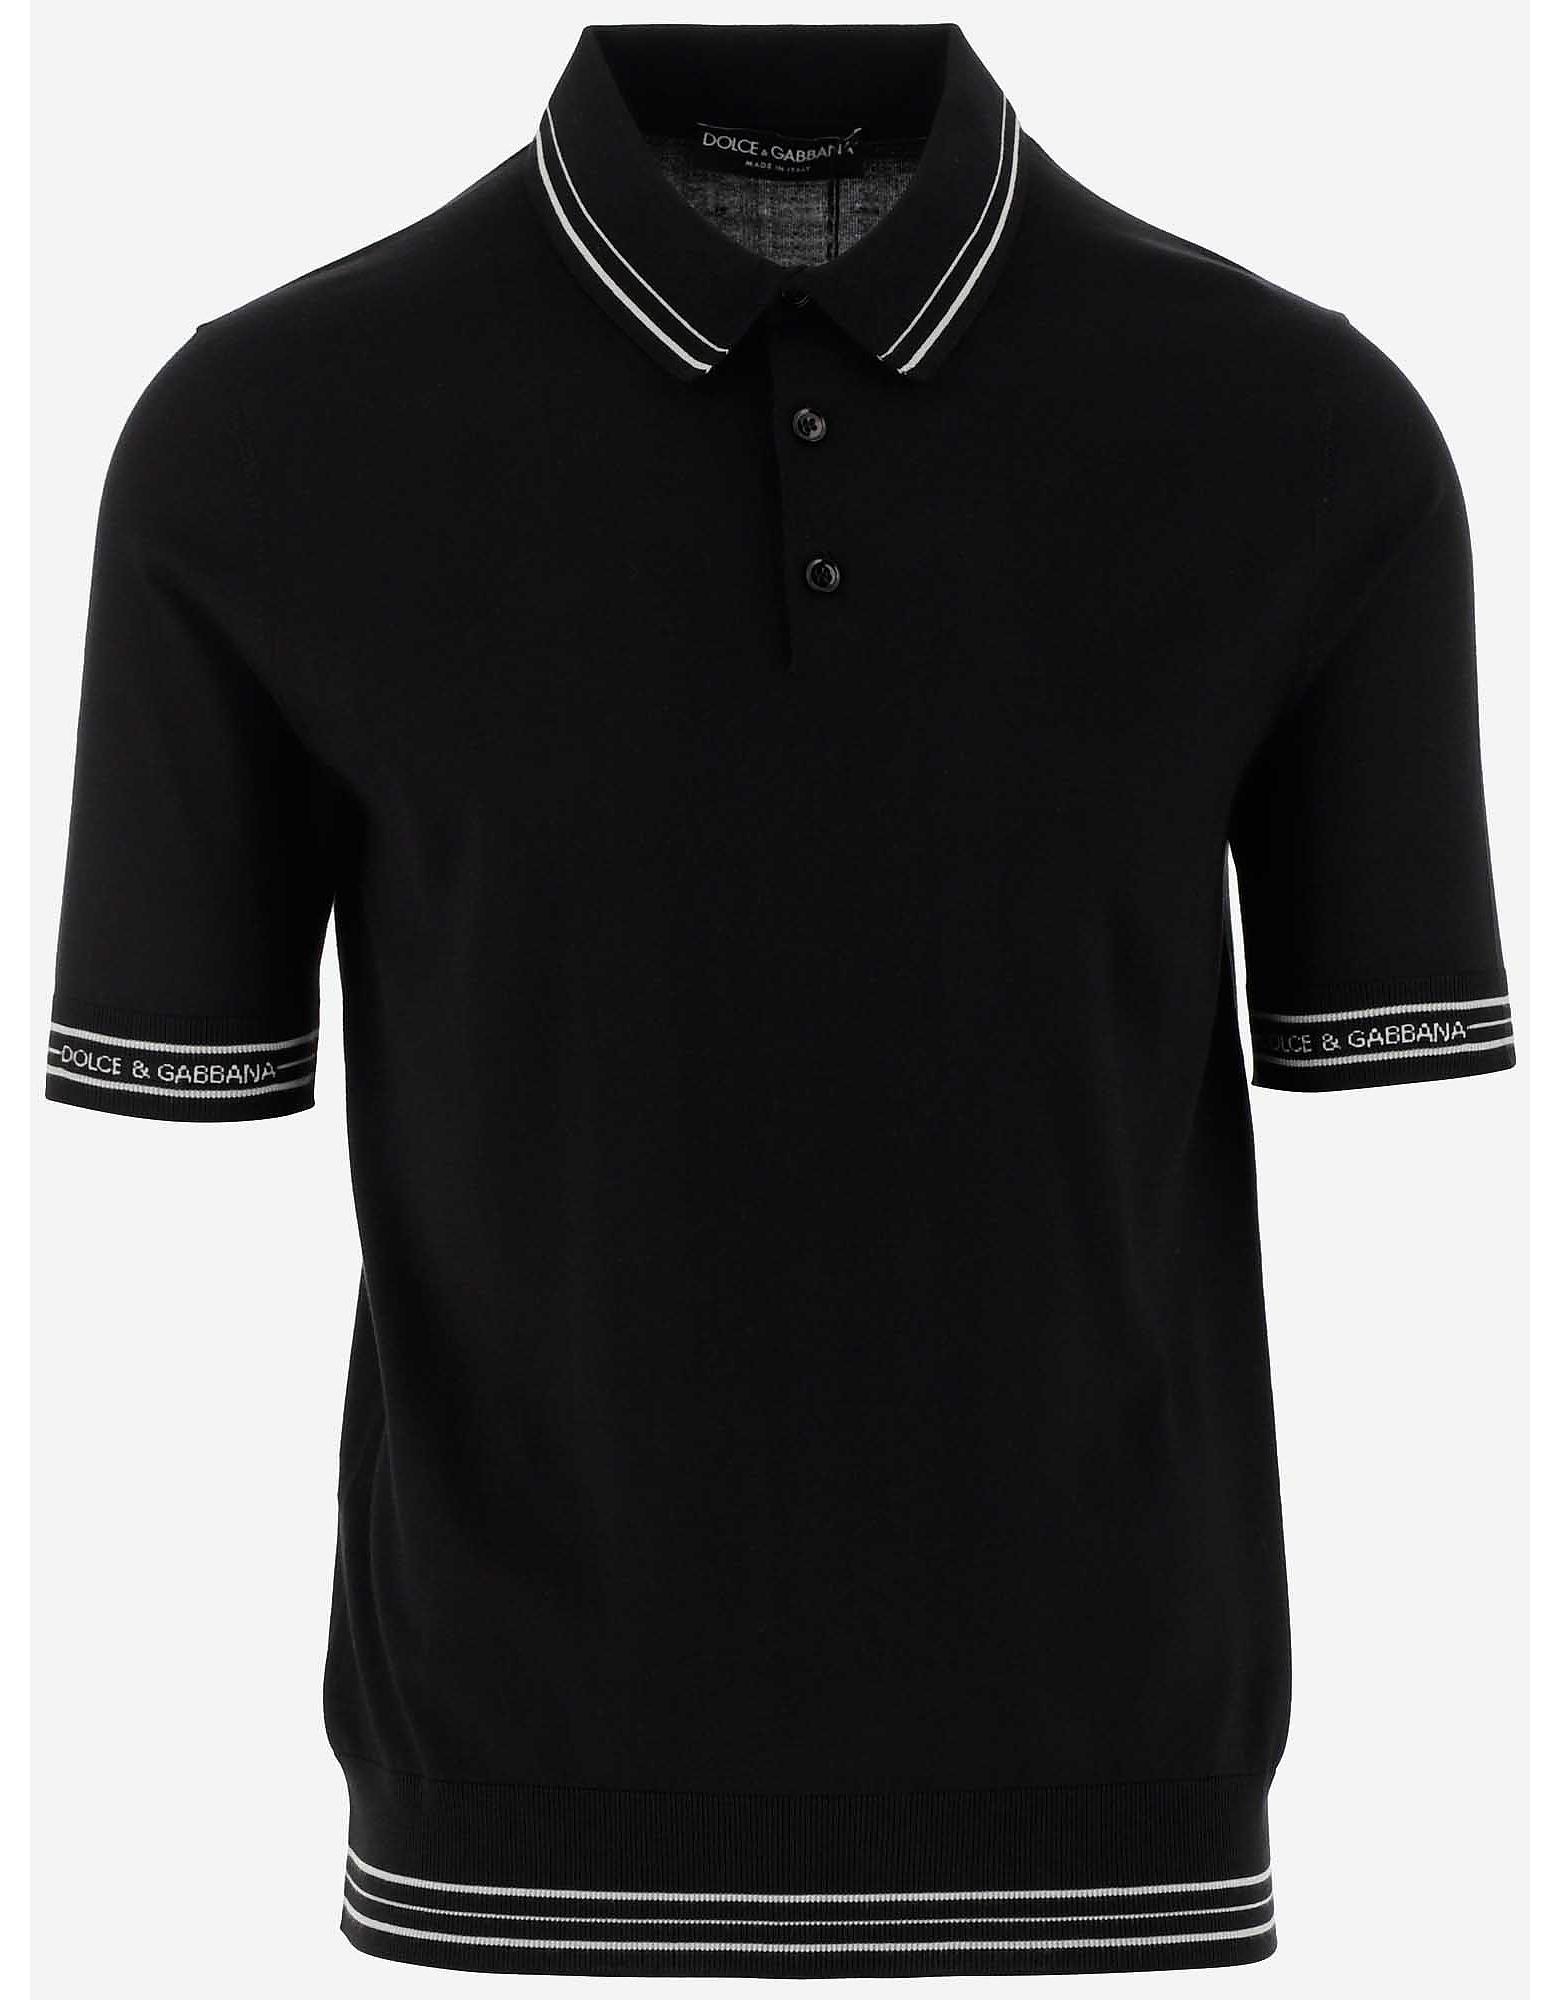 Dolce & Gabbana Black Silk Blend Men's Polo Shirt for Men - Lyst